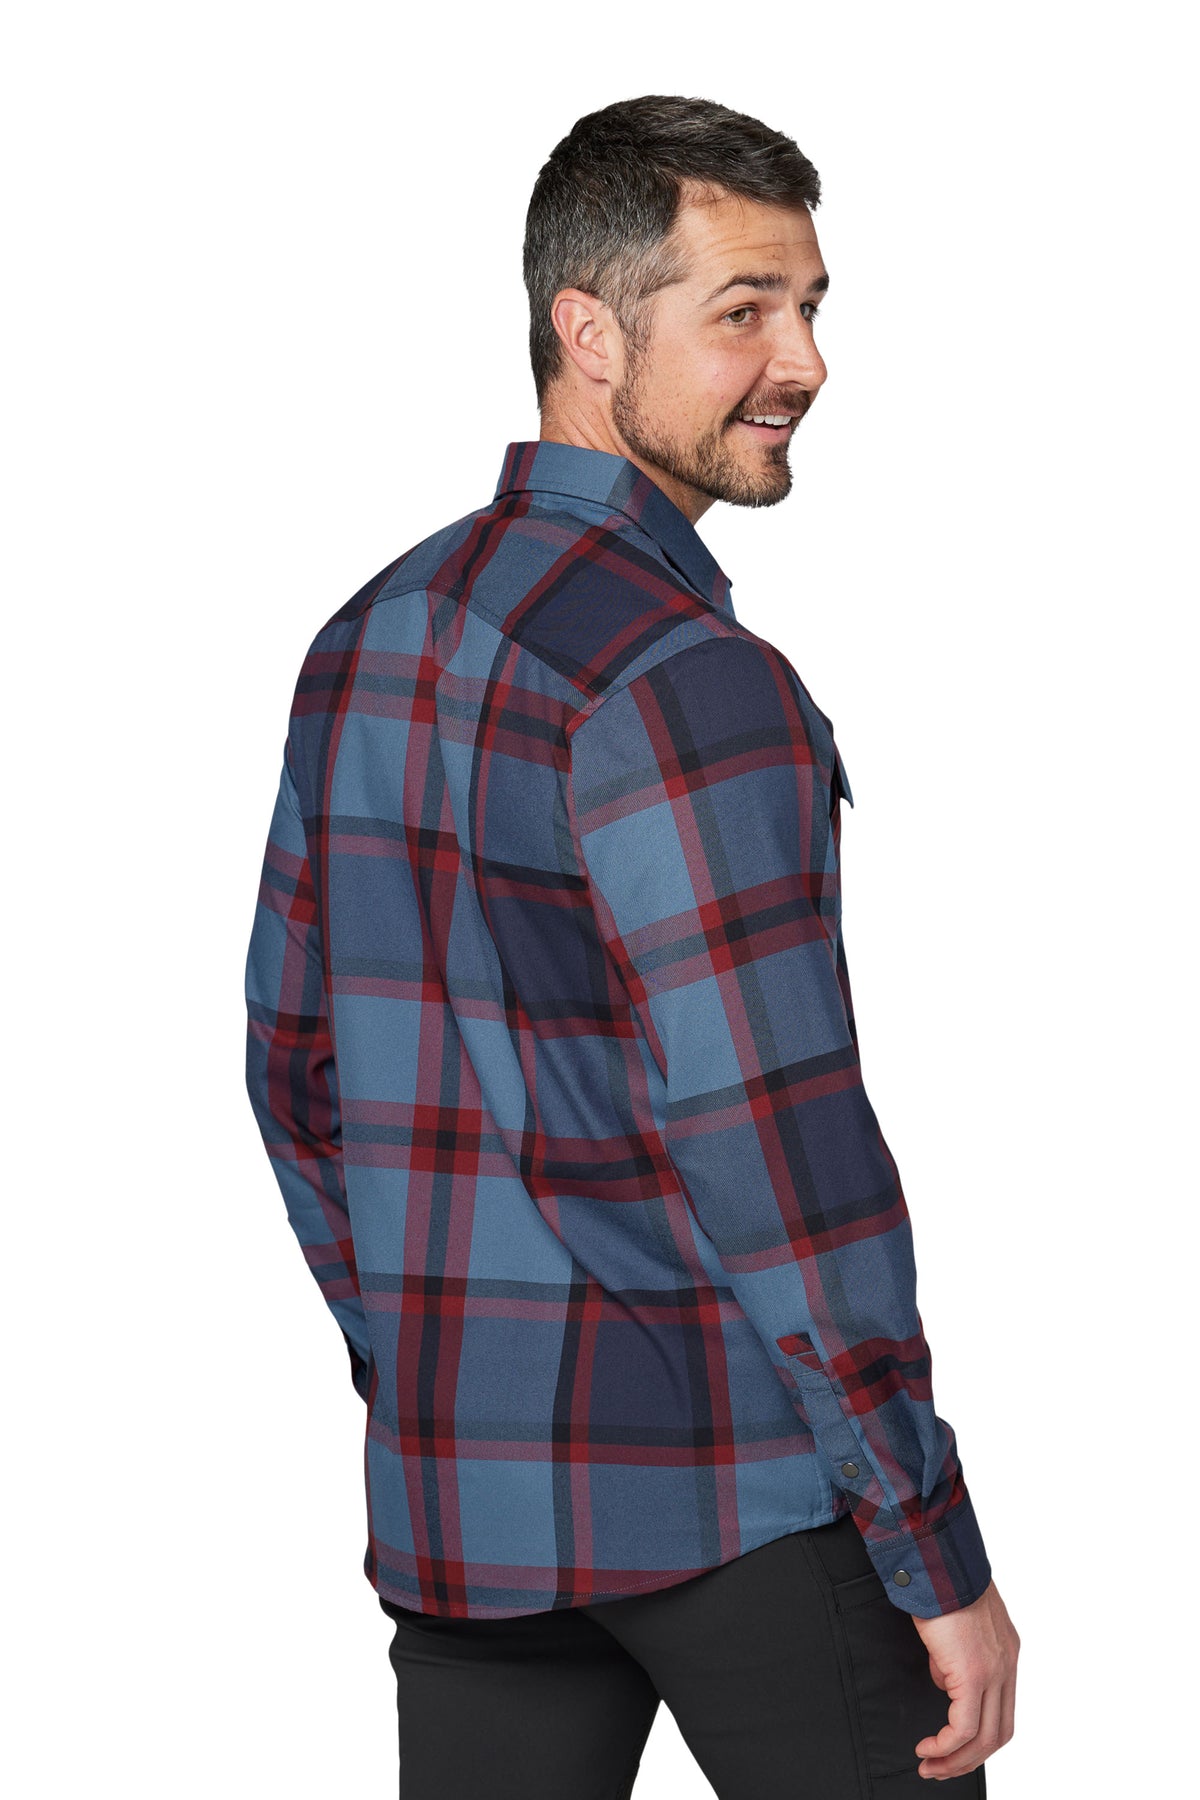 Handlebar Tech Flannel - Men's Flannel Shirt